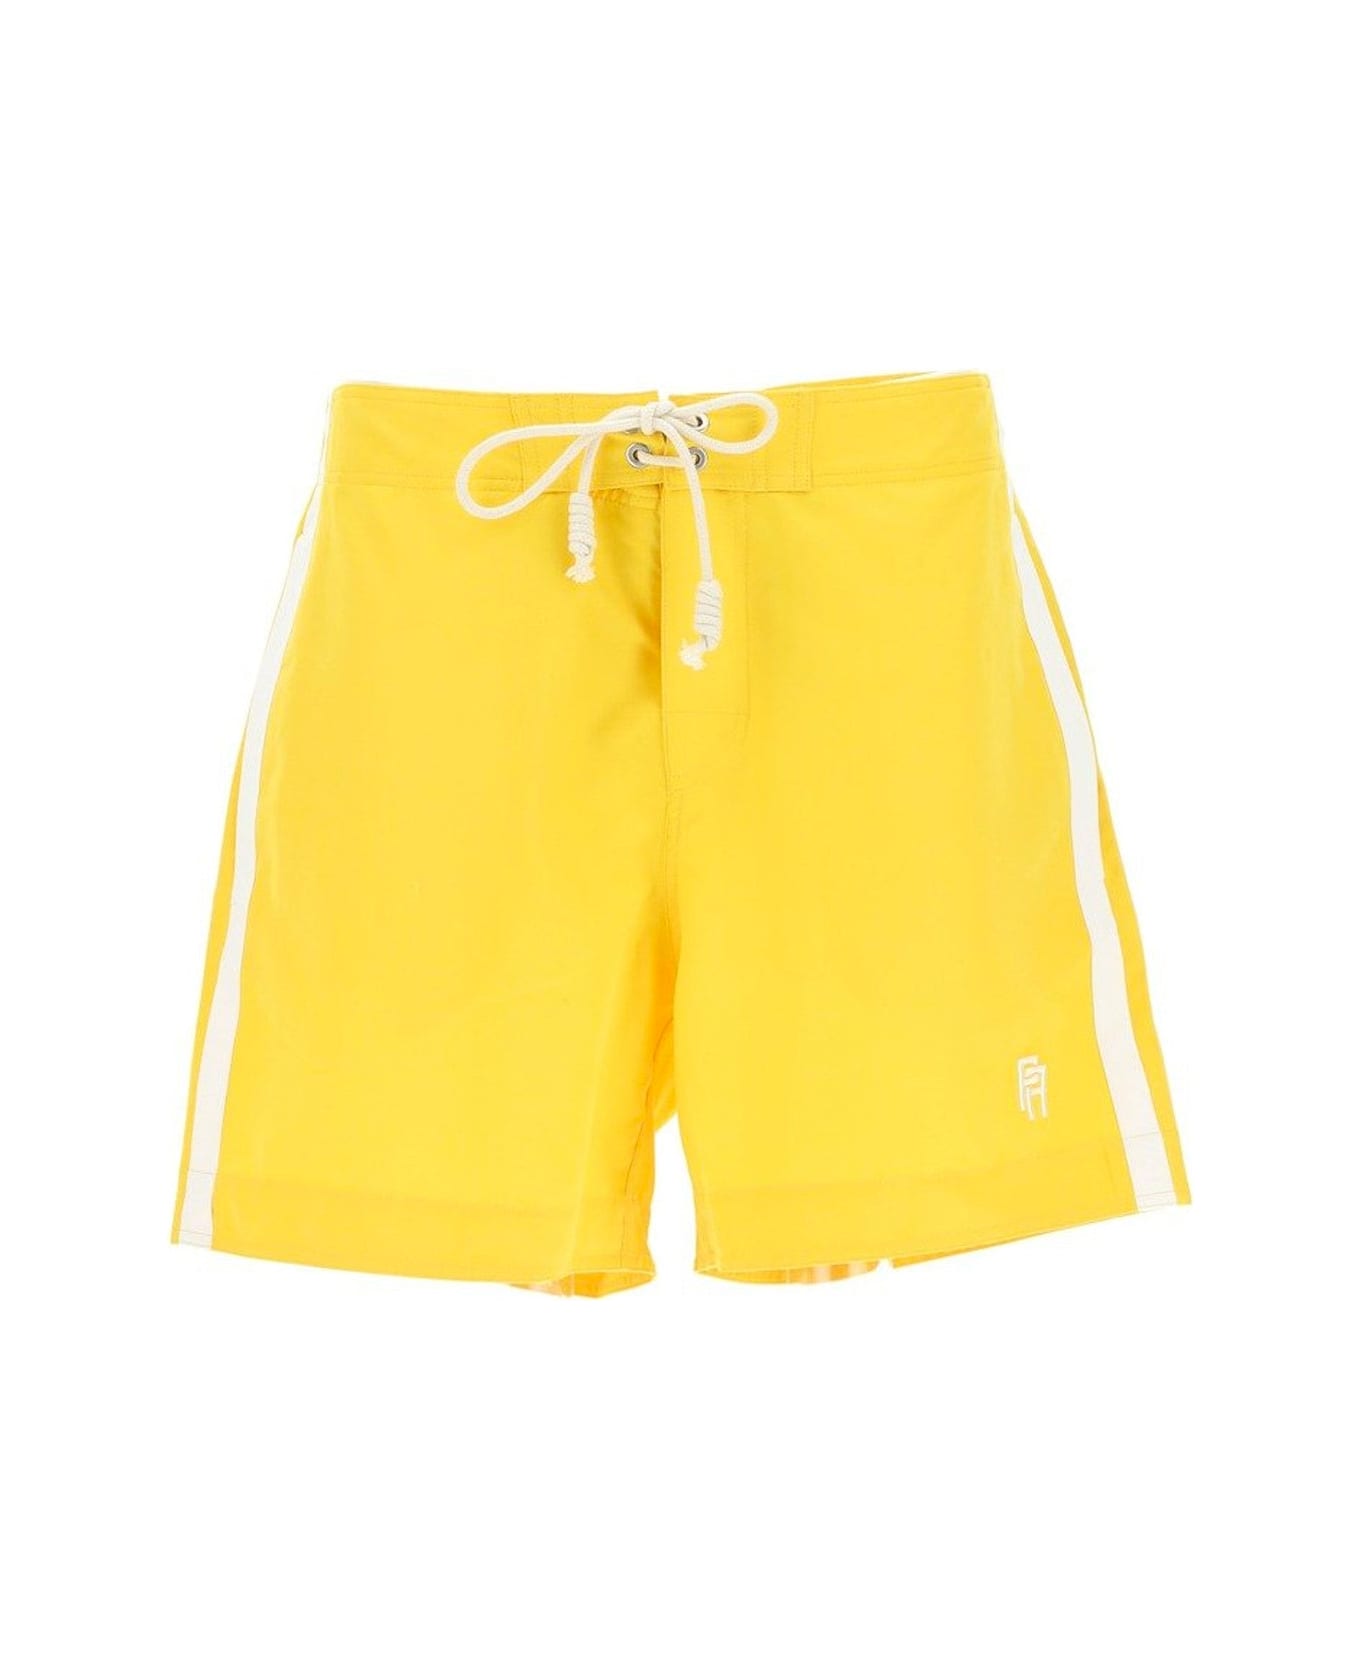 Palm Angels Swim Shorts - Yellow ショートパンツ